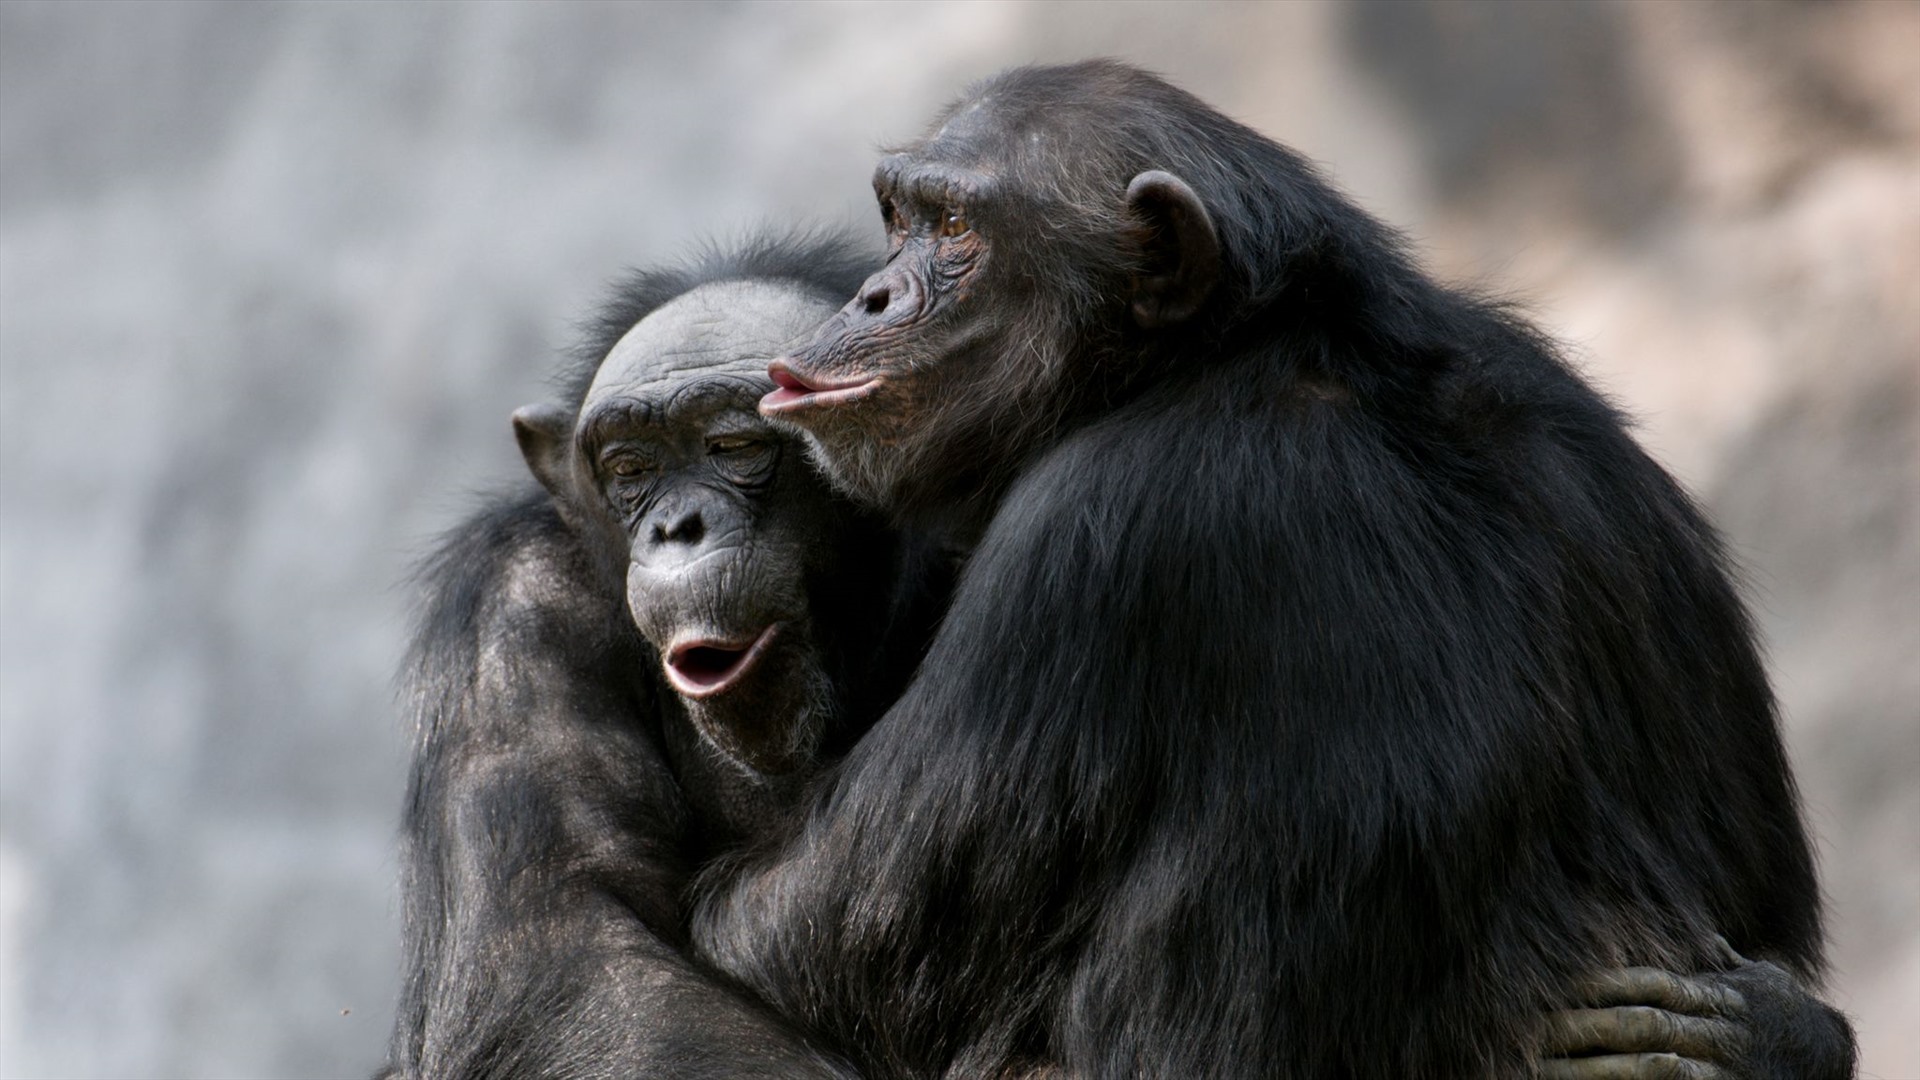 Phì cười” với biểu cảm của khỉ đột khi bị chụp hình - Tạp chí Doanh nghiệp  Việt Nam